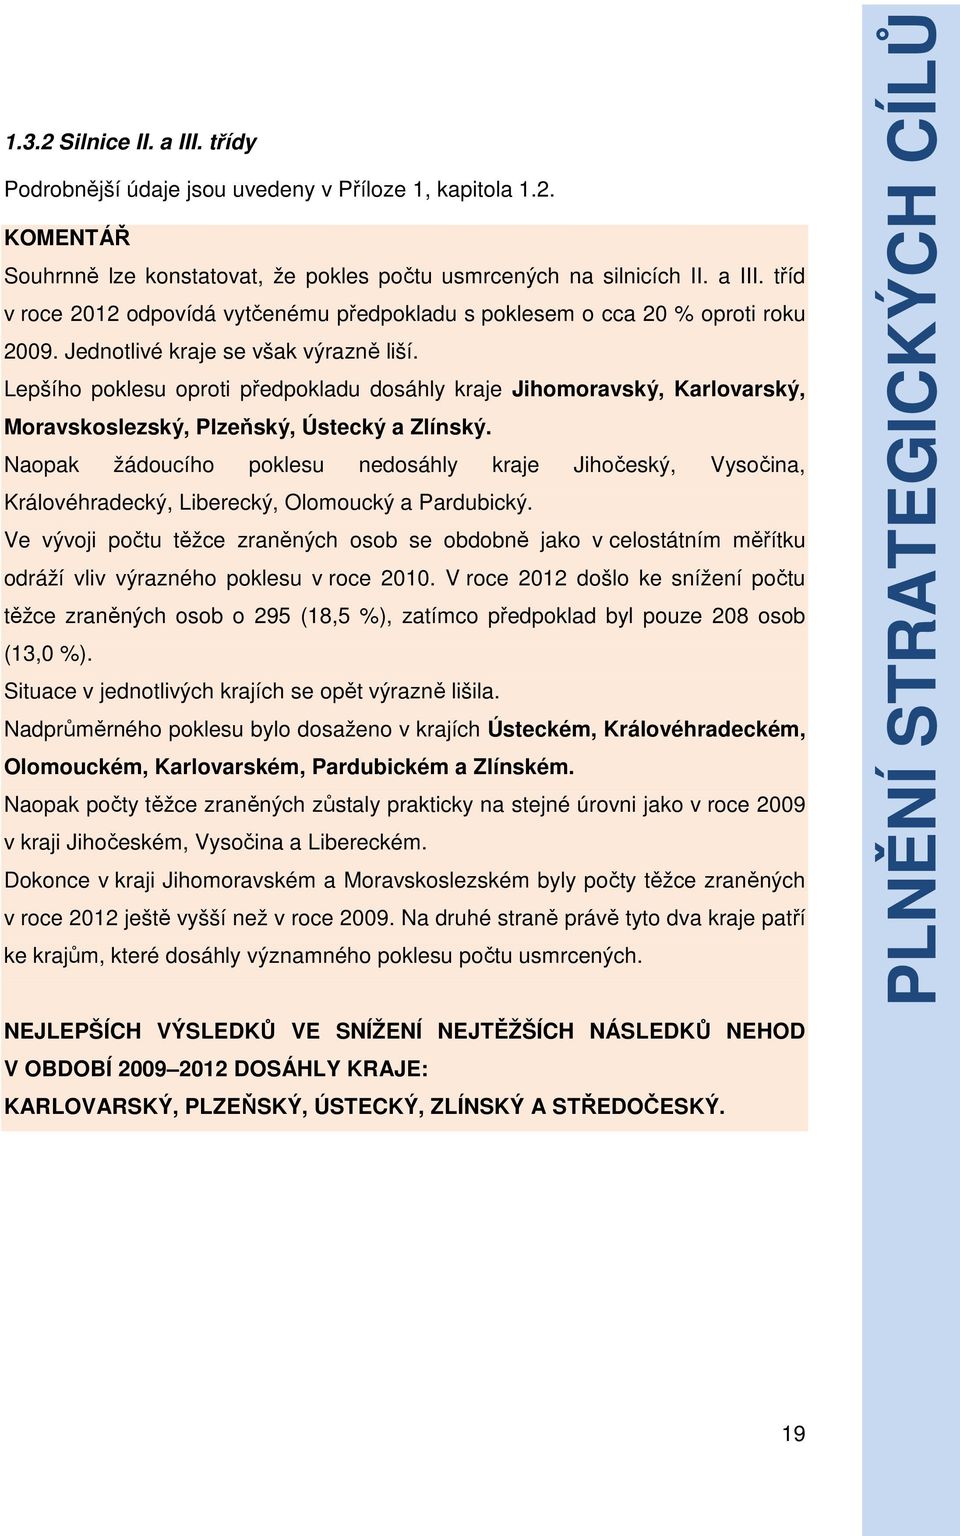 Naopak žádoucího poklesu nedosáhly kraje Jihočeský, Vysočina, Královéhradecký, Liberecký, Olomoucký a Pardubický.